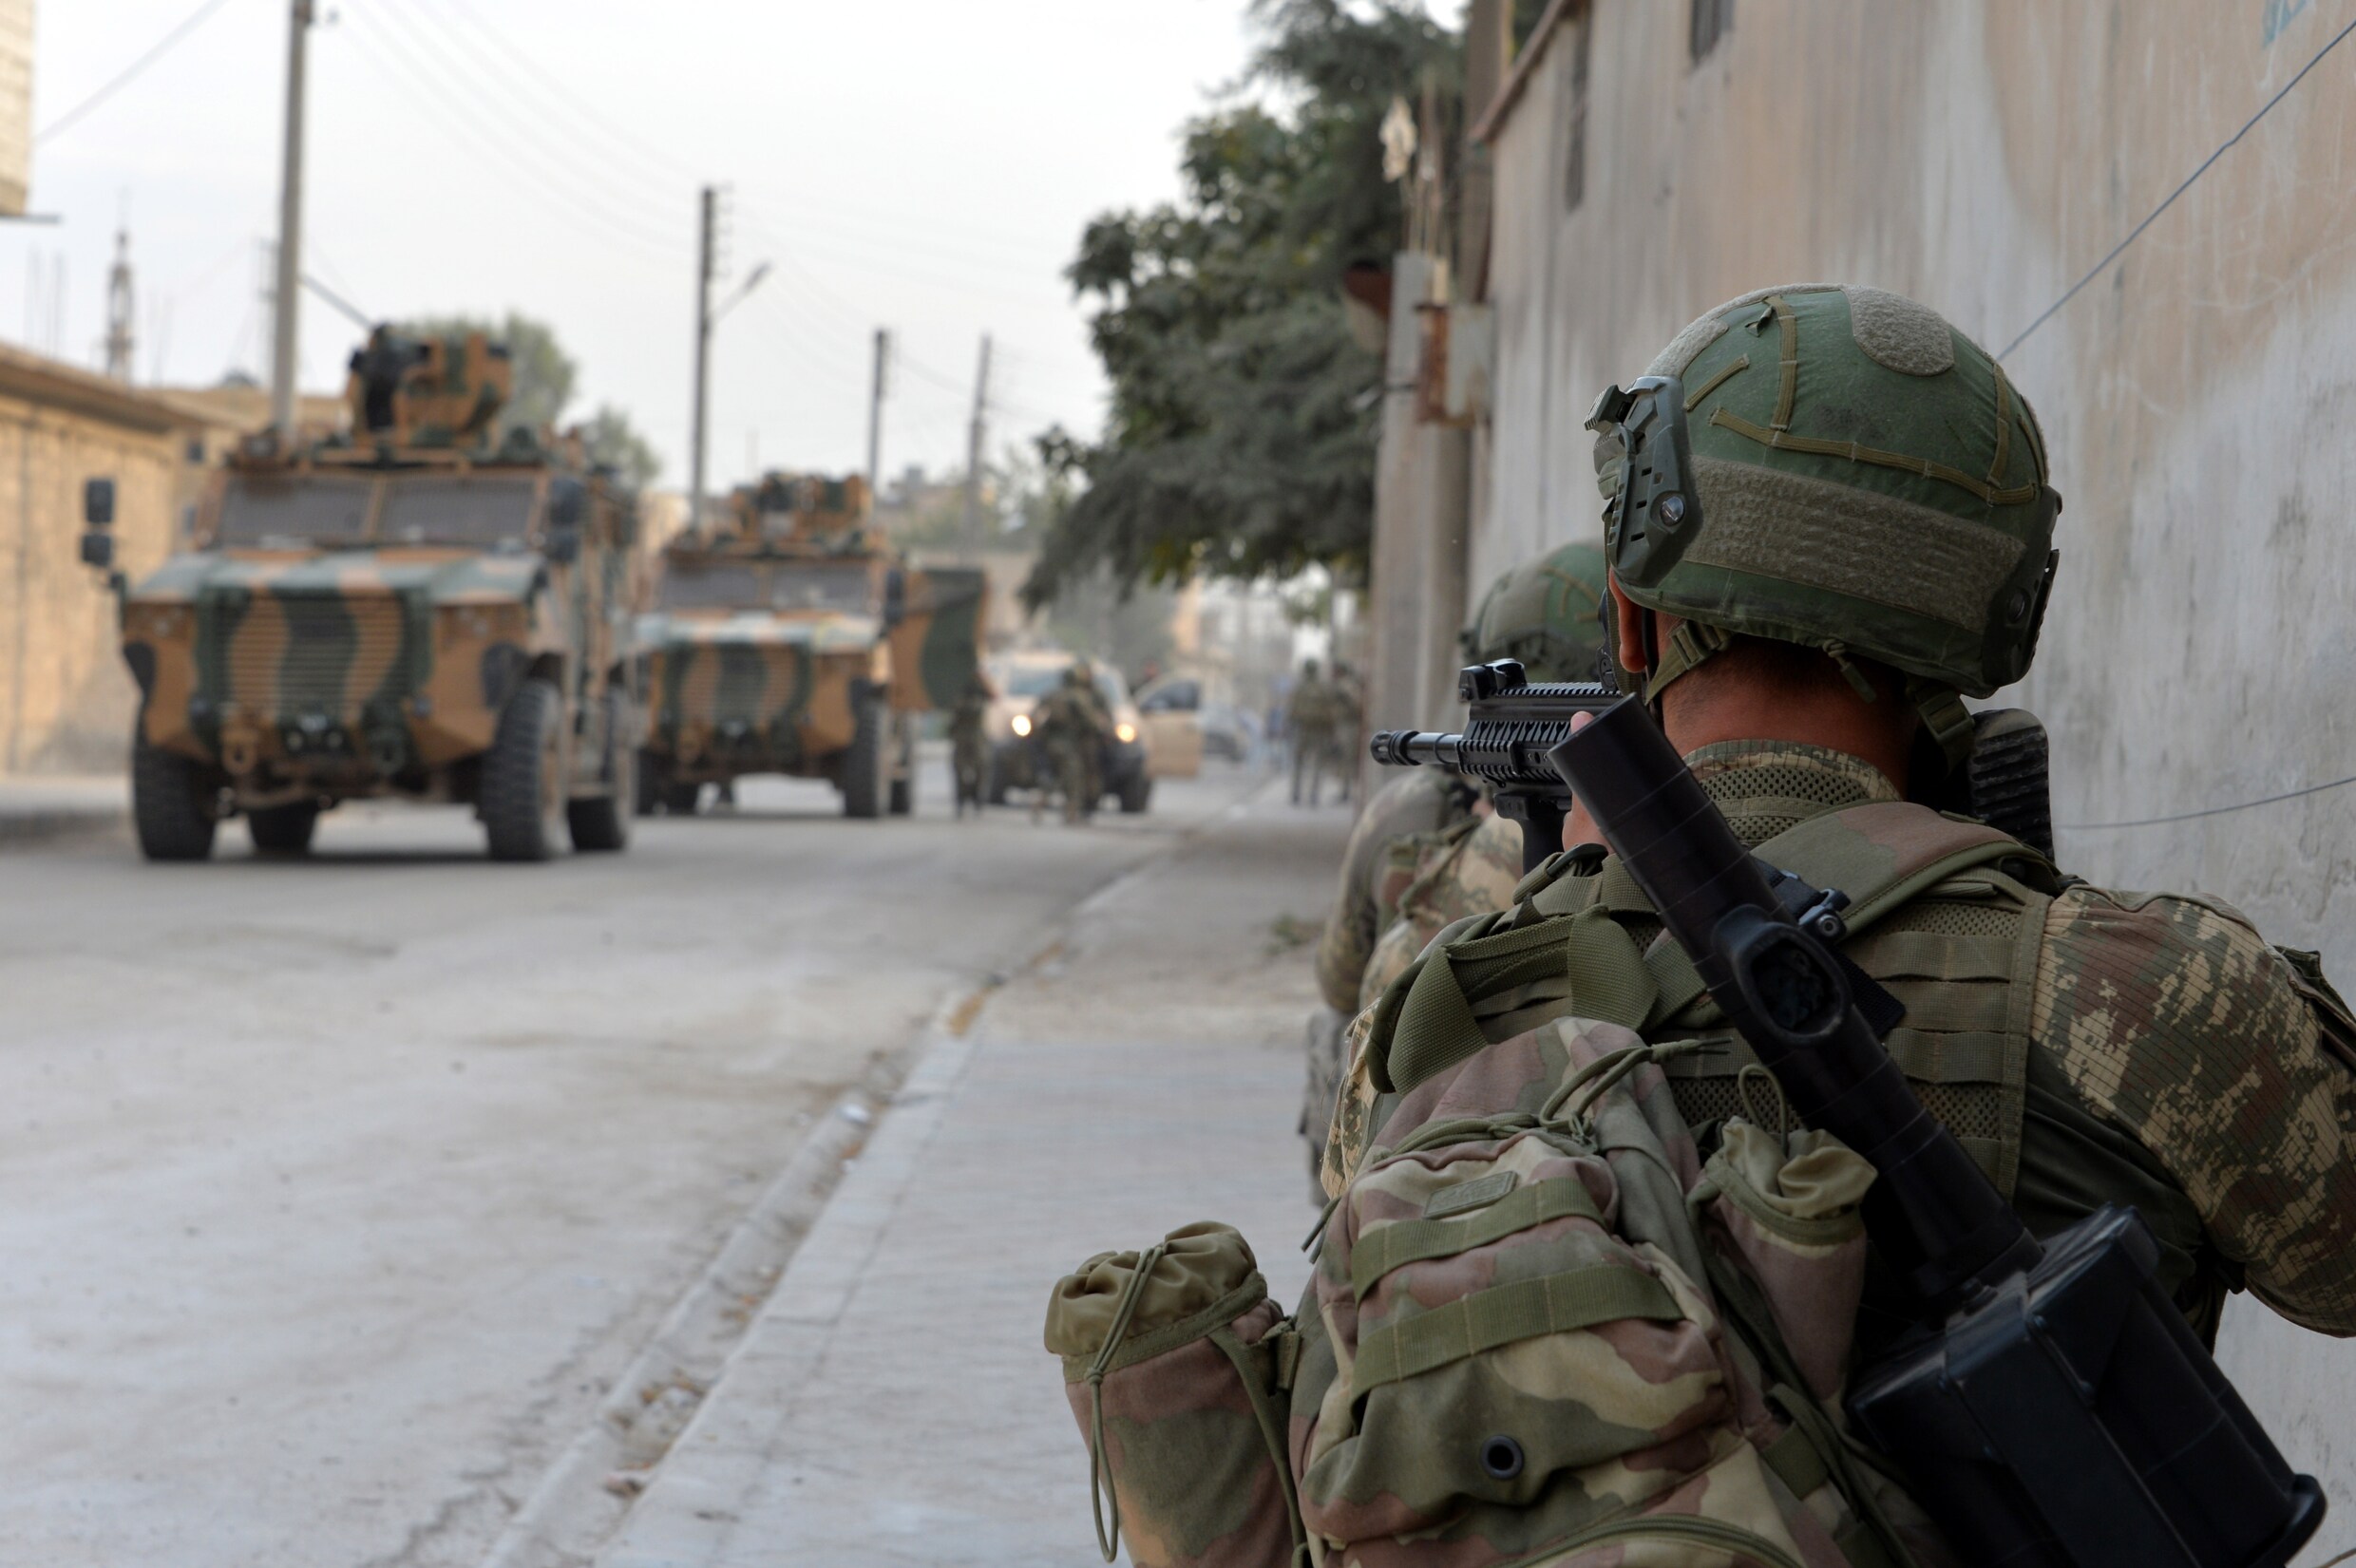 Turken en Koerden beschuldigen elkaar van schenden wapenstilstand